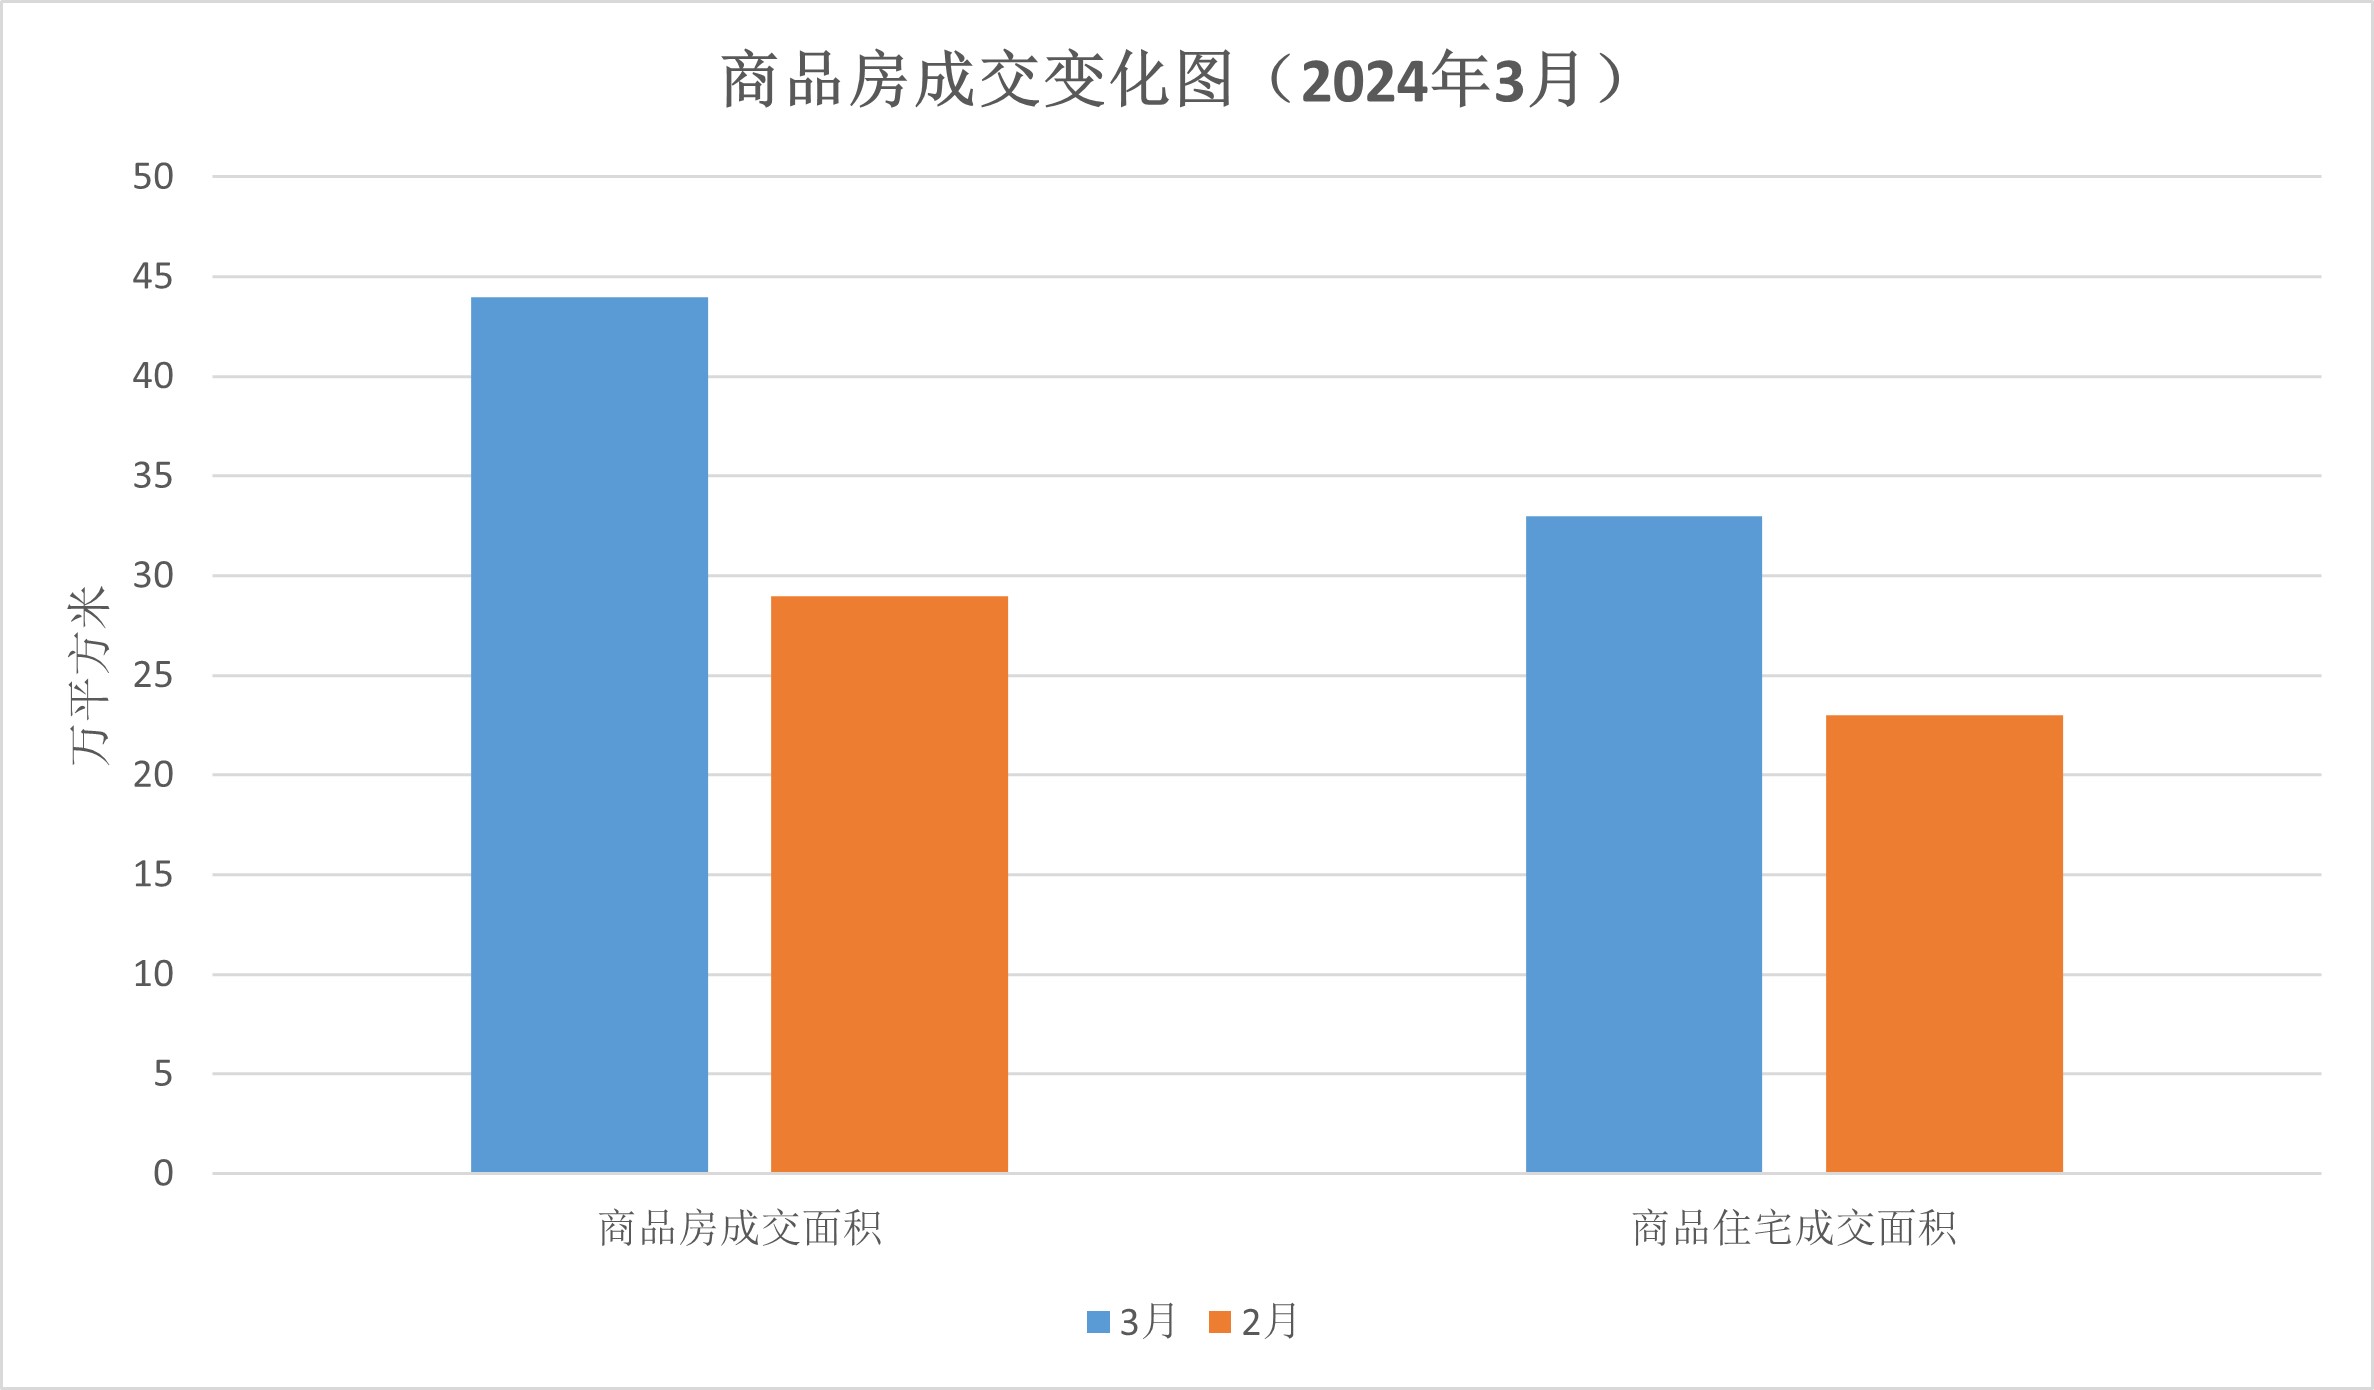 【图表解读】江门市2024年3月房地产市场主要数据解读